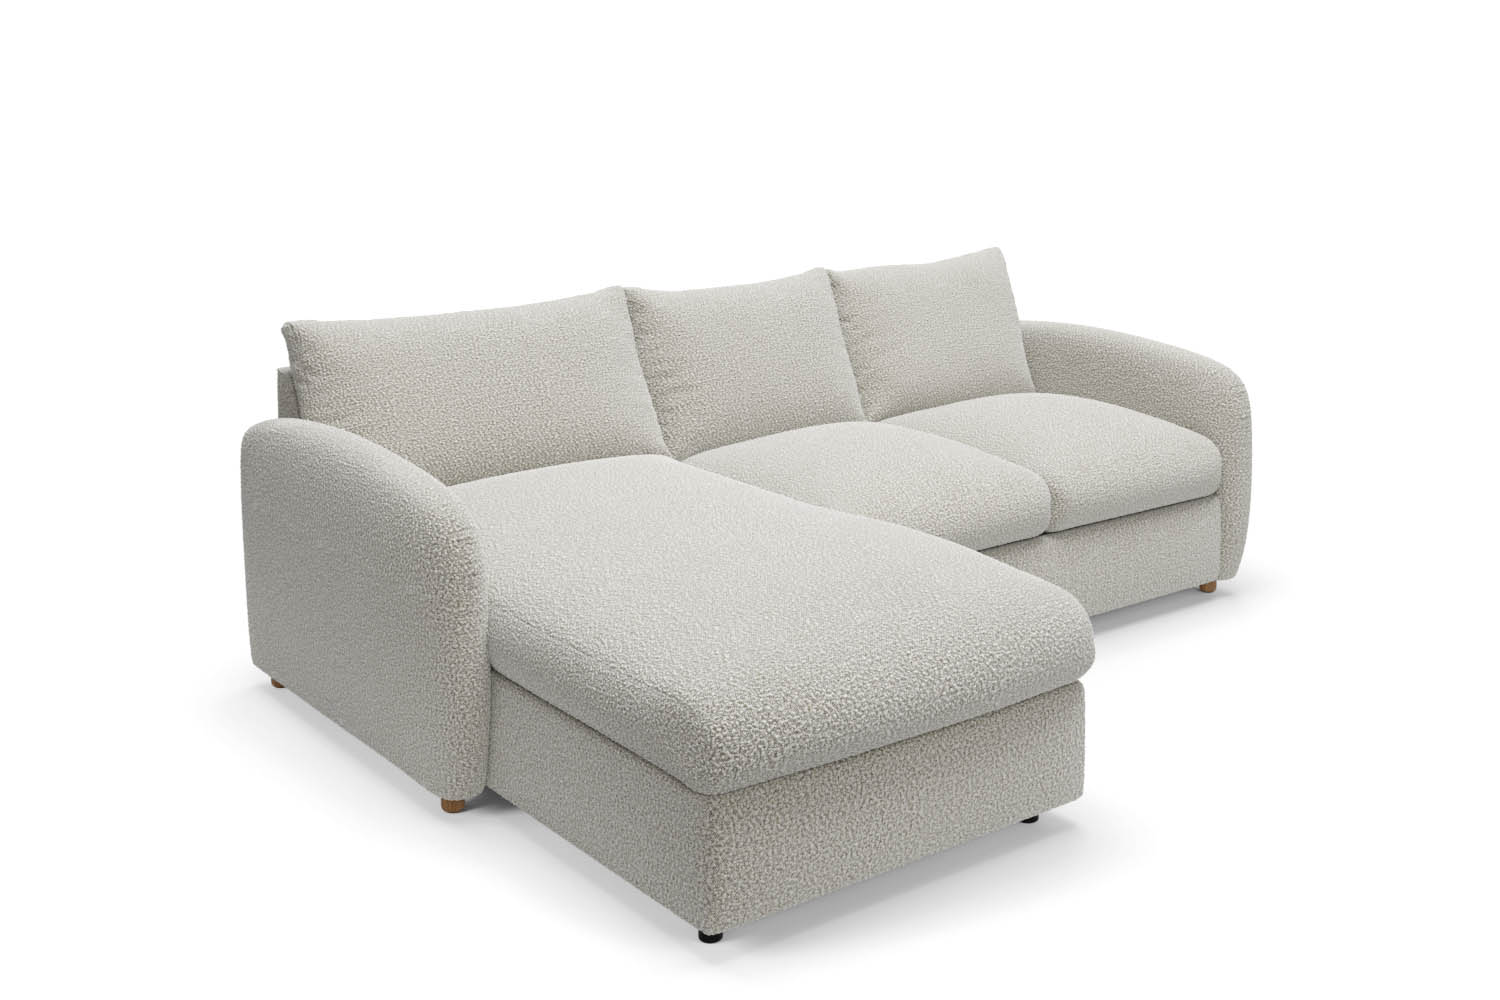 The Small Biggie - Chaise Corner Sofa - Fuzzy White Boucle